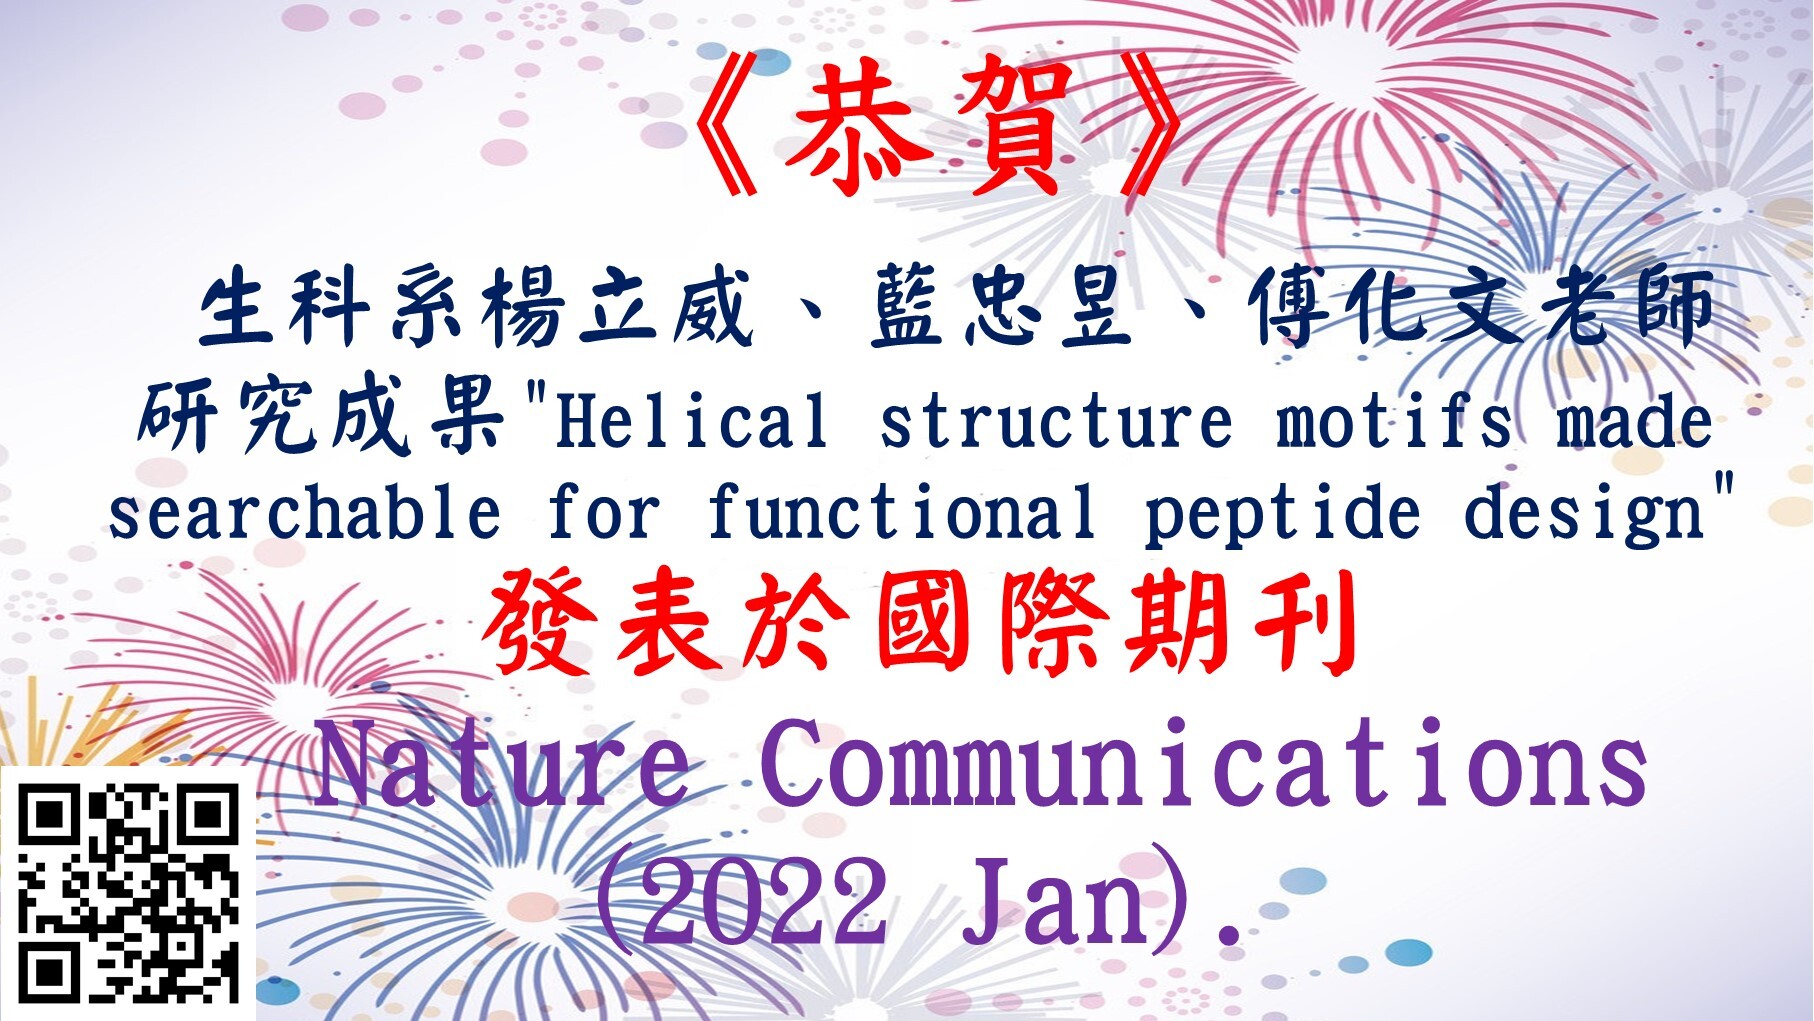 恭喜 生科系楊立威老師、藍忠昱老師、傅化文老師的研究著作 (Helical Structure Motifs Made Searchable for Functional Peptide Design) 發表於 Nature Communications (January, 2022).